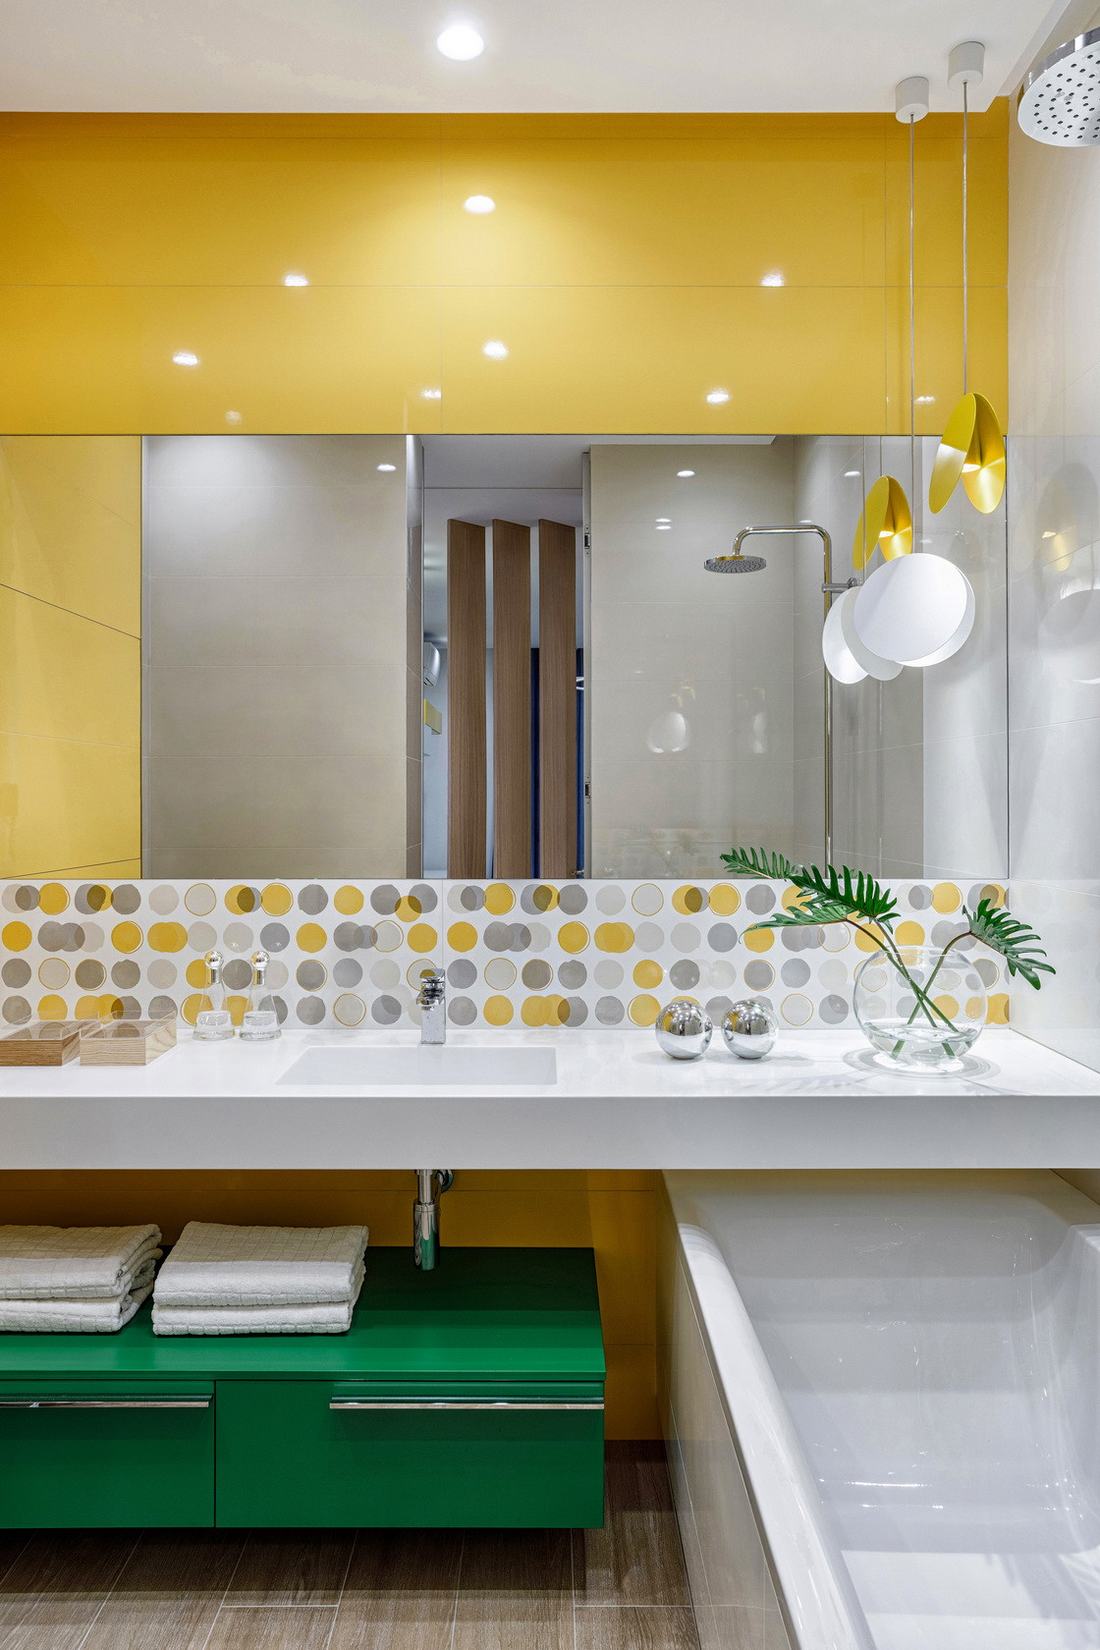 sárga - 14 látványos szín ötlet új fürdőszoba elevenebb, vidámabb hangulatú dekorációjához